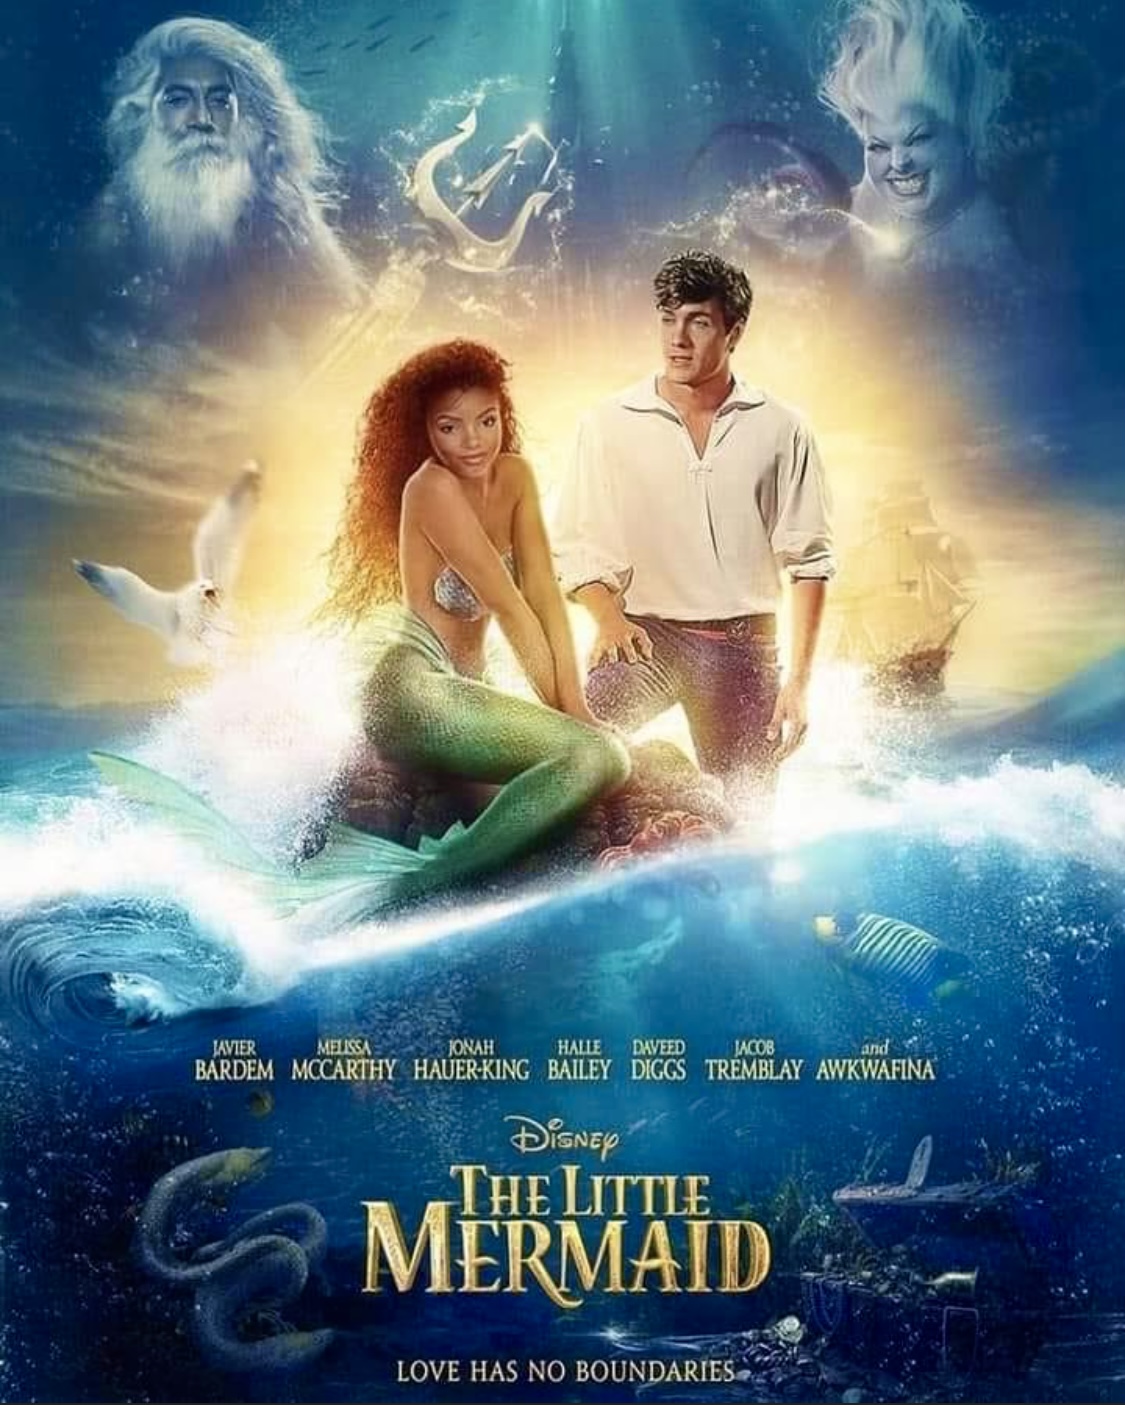 La Petite Sirene Film 2023 - Communauté MCMS™. Nov 2023